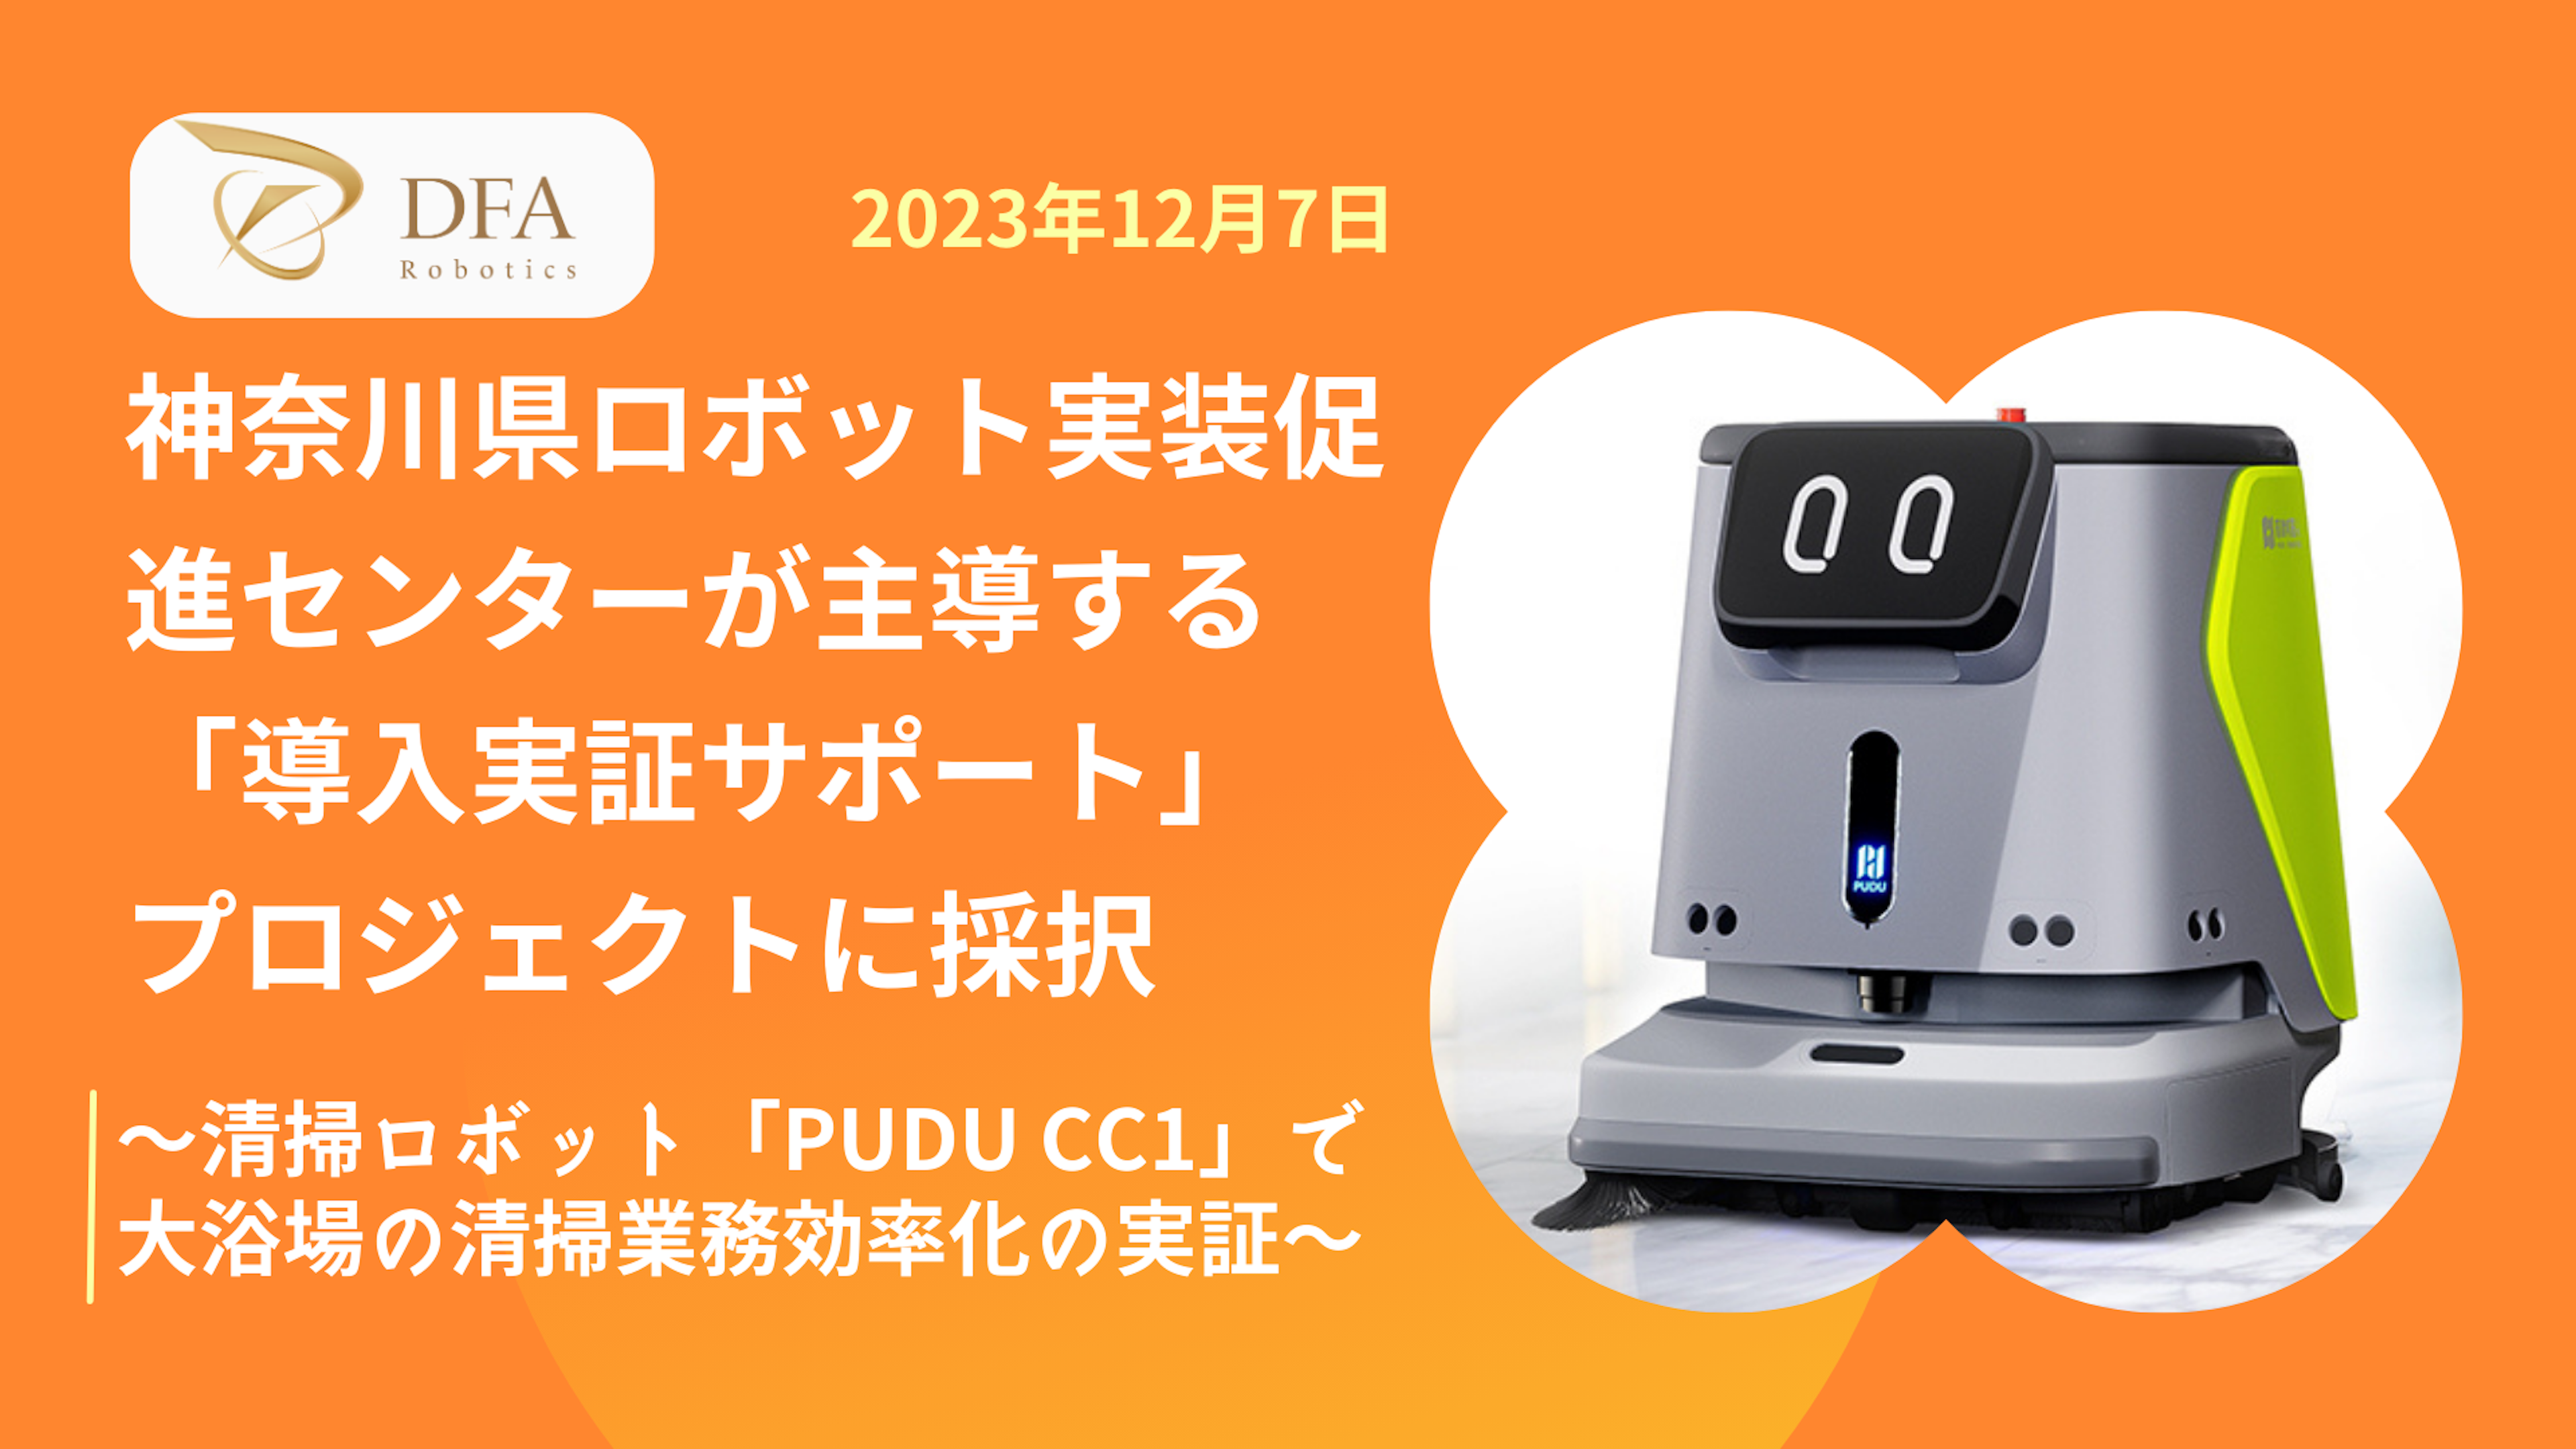 DFA Robotics、神奈川県ロボット実装促進センターが主導する「導入実証サポート」プロジェクトに採択
～清掃ロボット「PUDU CC1」による大浴場の清掃業務効率化の実証～